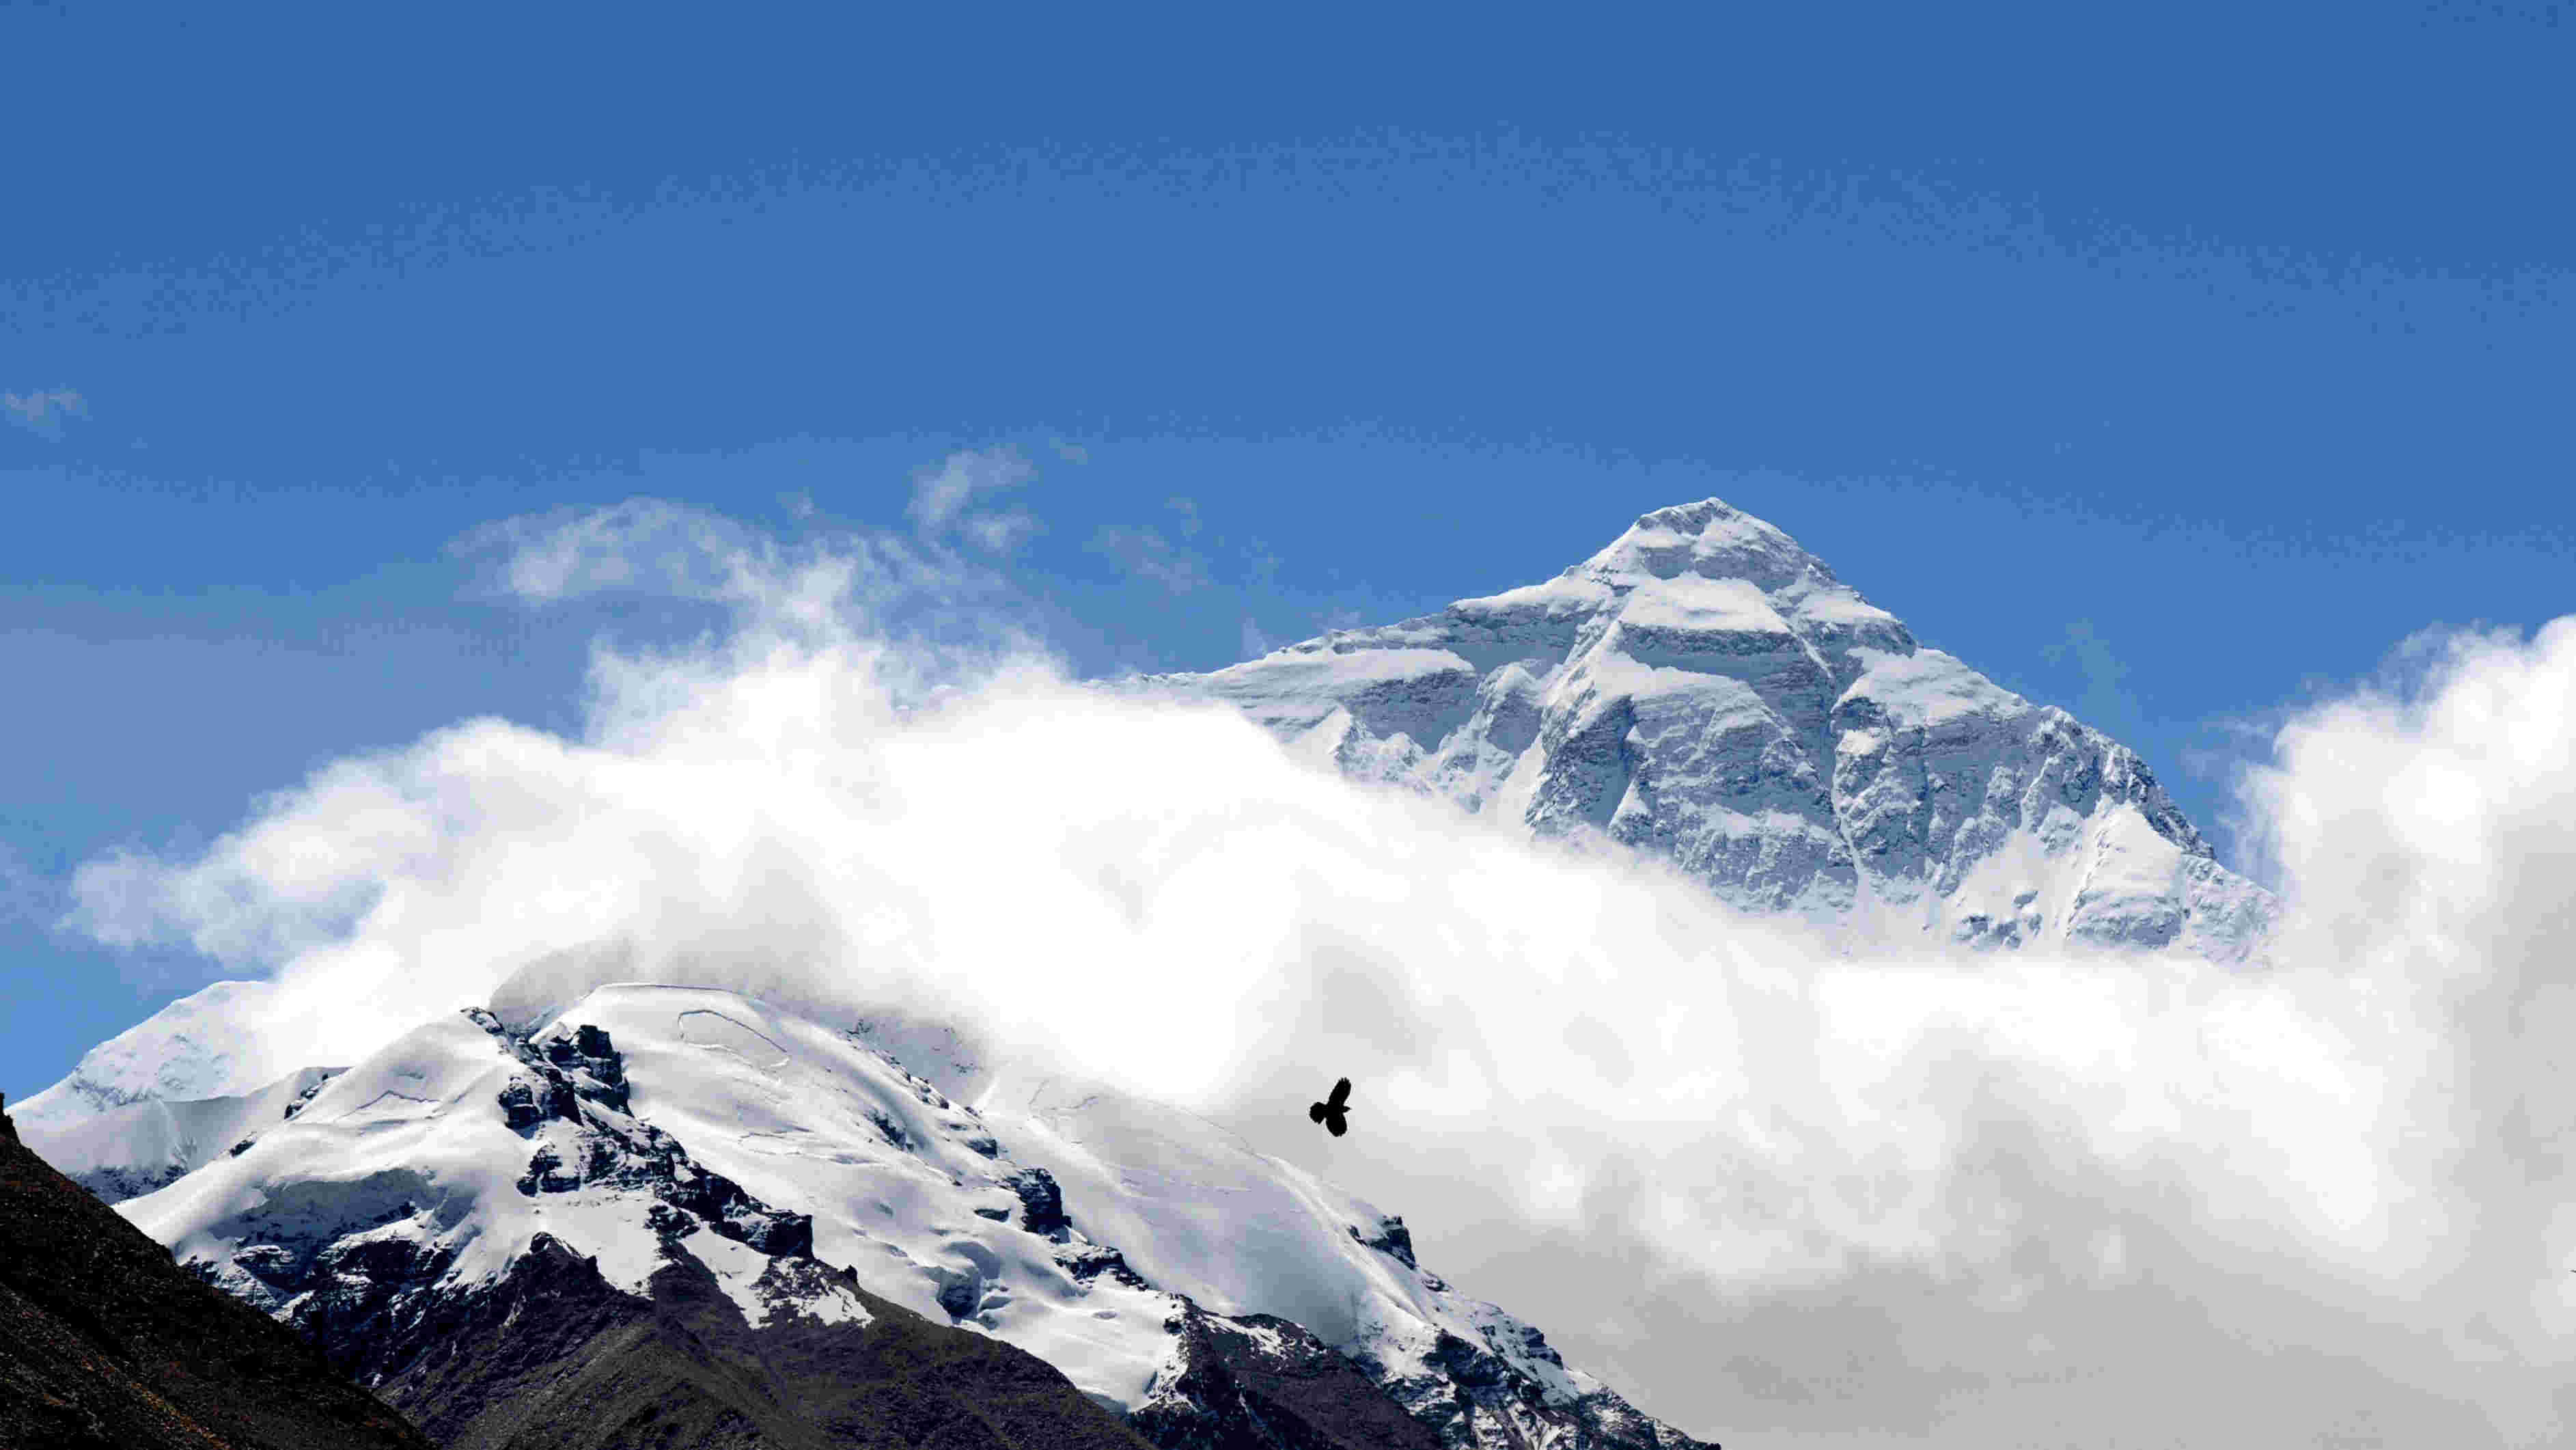  喜马拉雅珠穆朗玛峰